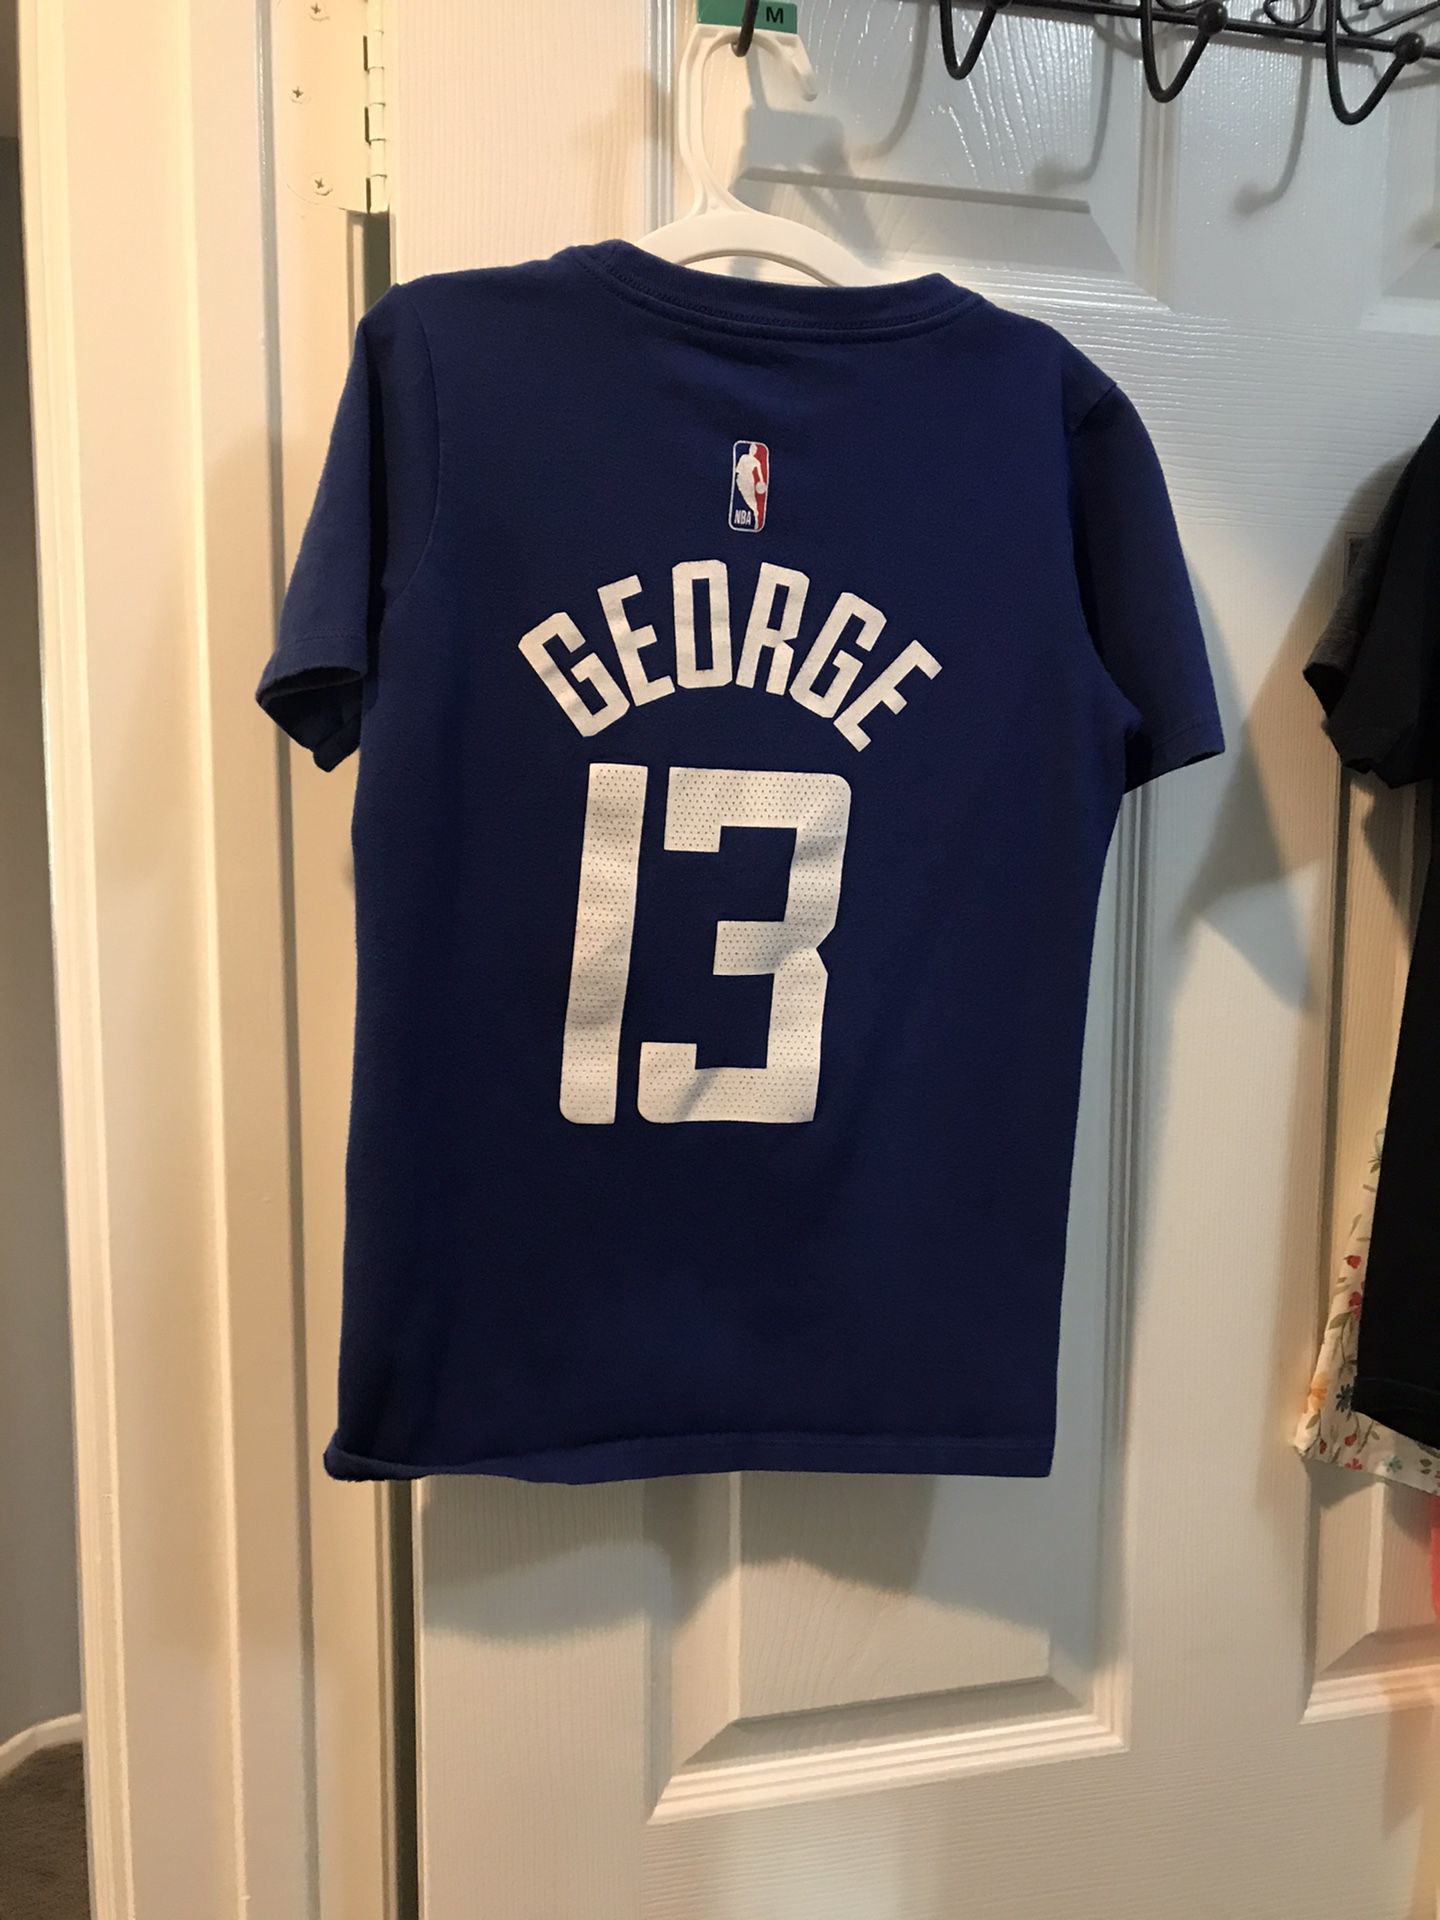 Paul George NBA Fan Jerseys for sale